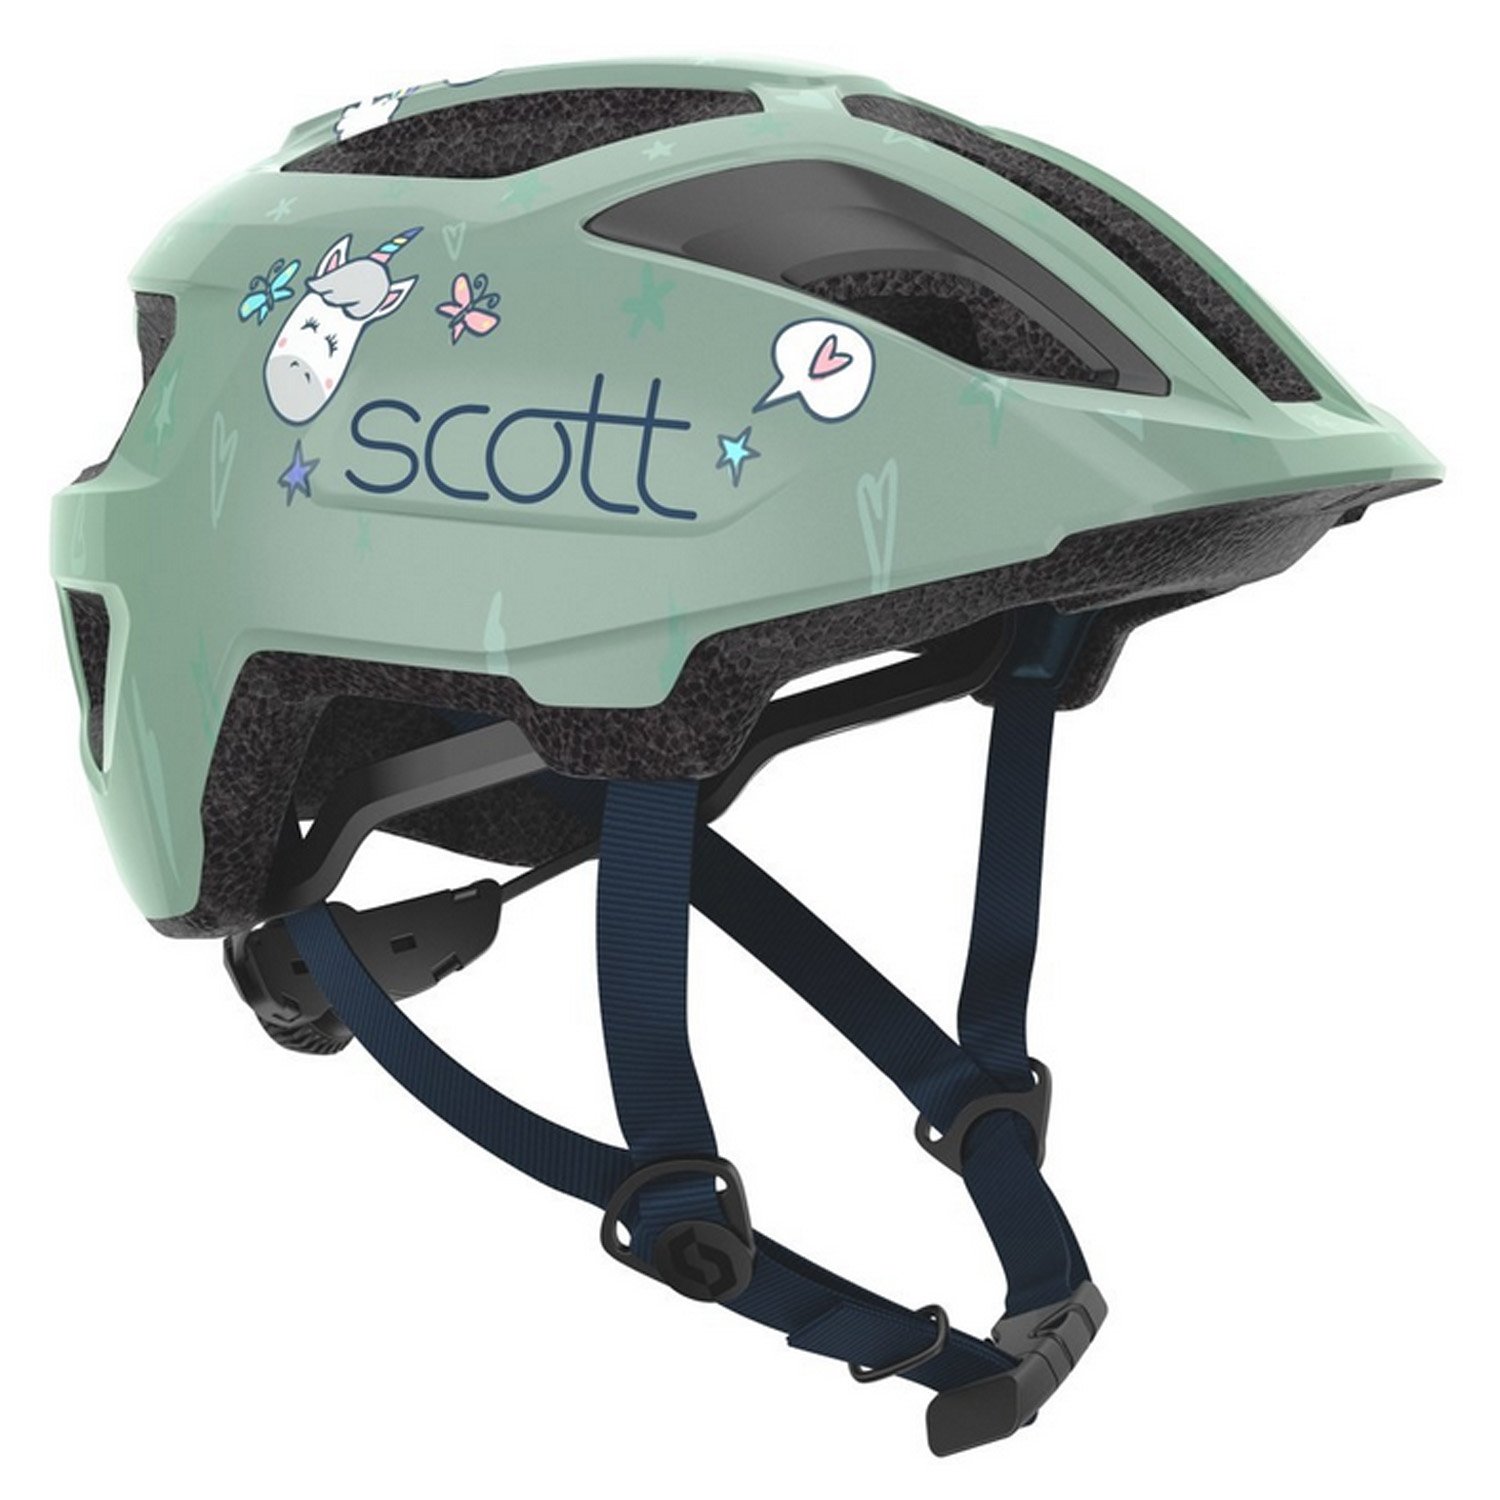 Велошлем SCOTT Kid Spunto (CE), soft green, ES275235-5487 шлем велосипедный scott spunto kid azalea pink onesize 50 56 см 2019 270115 5815